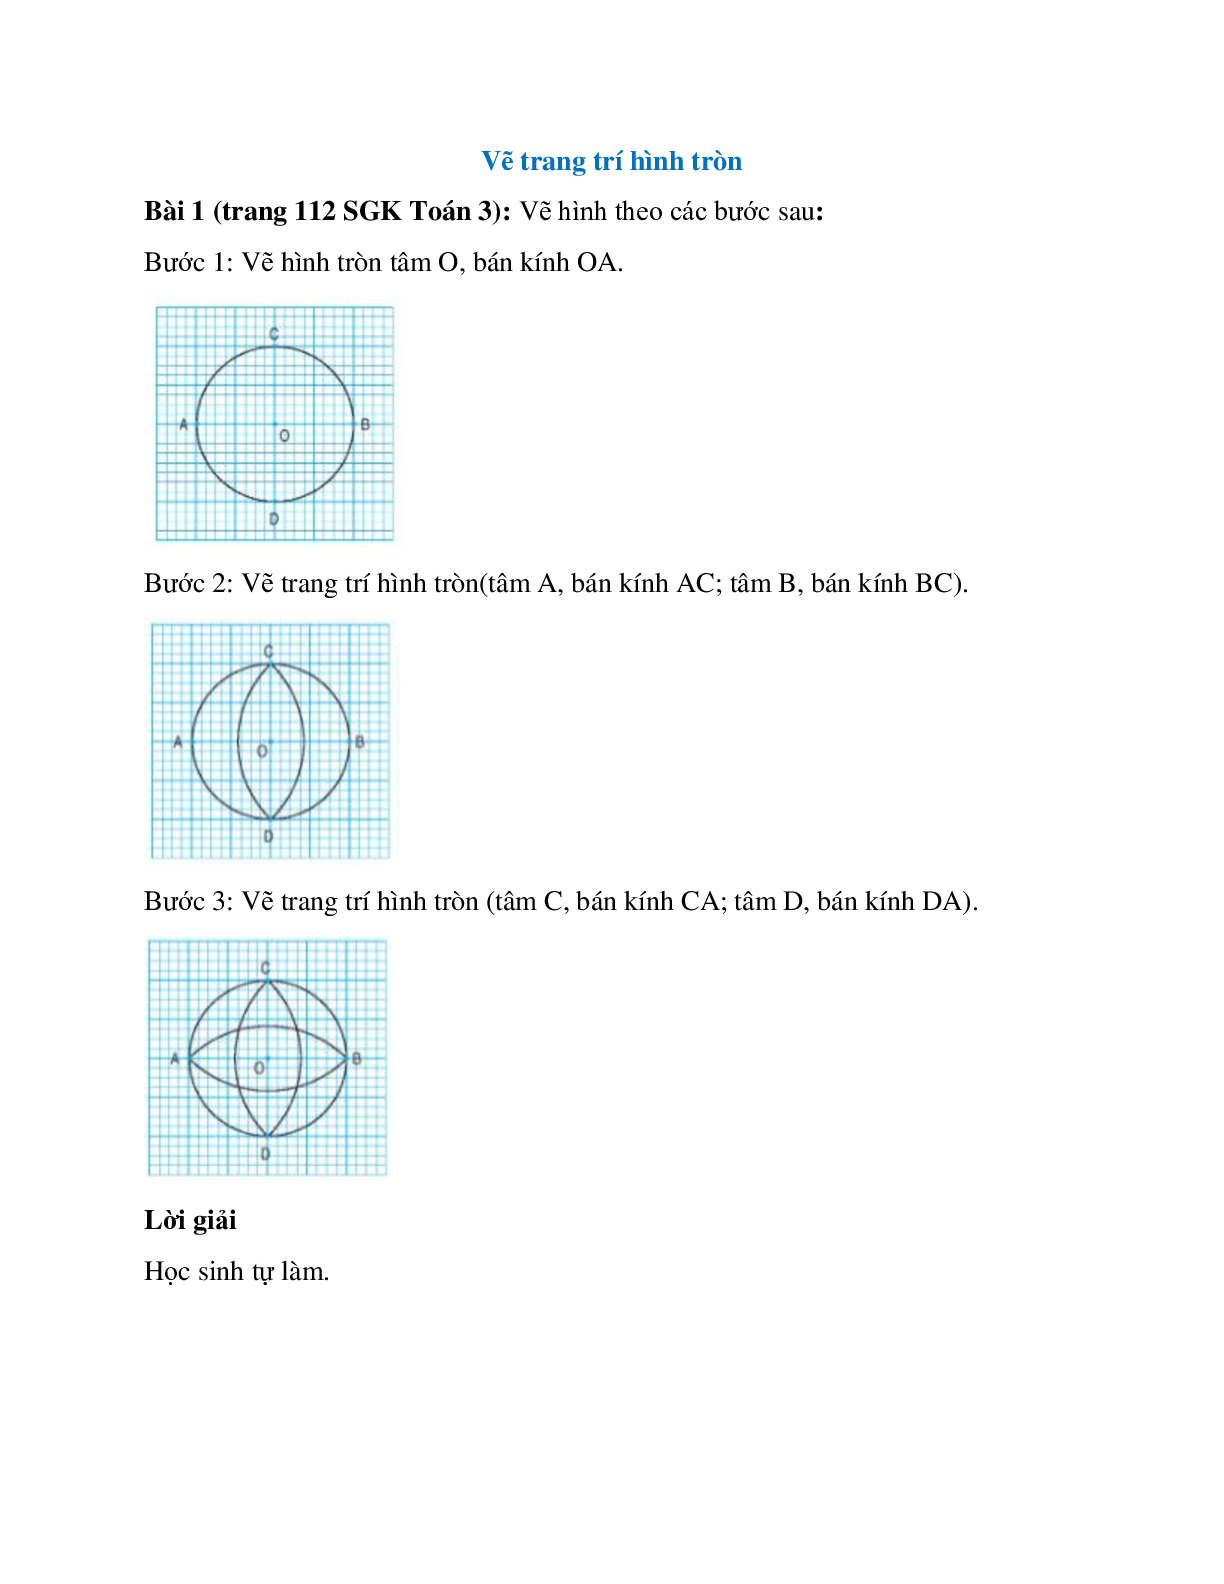 Vẽ hình theo các bước sau Bước 1: Vẽ hình tròn tâm O, bán kính OA (trang 1)